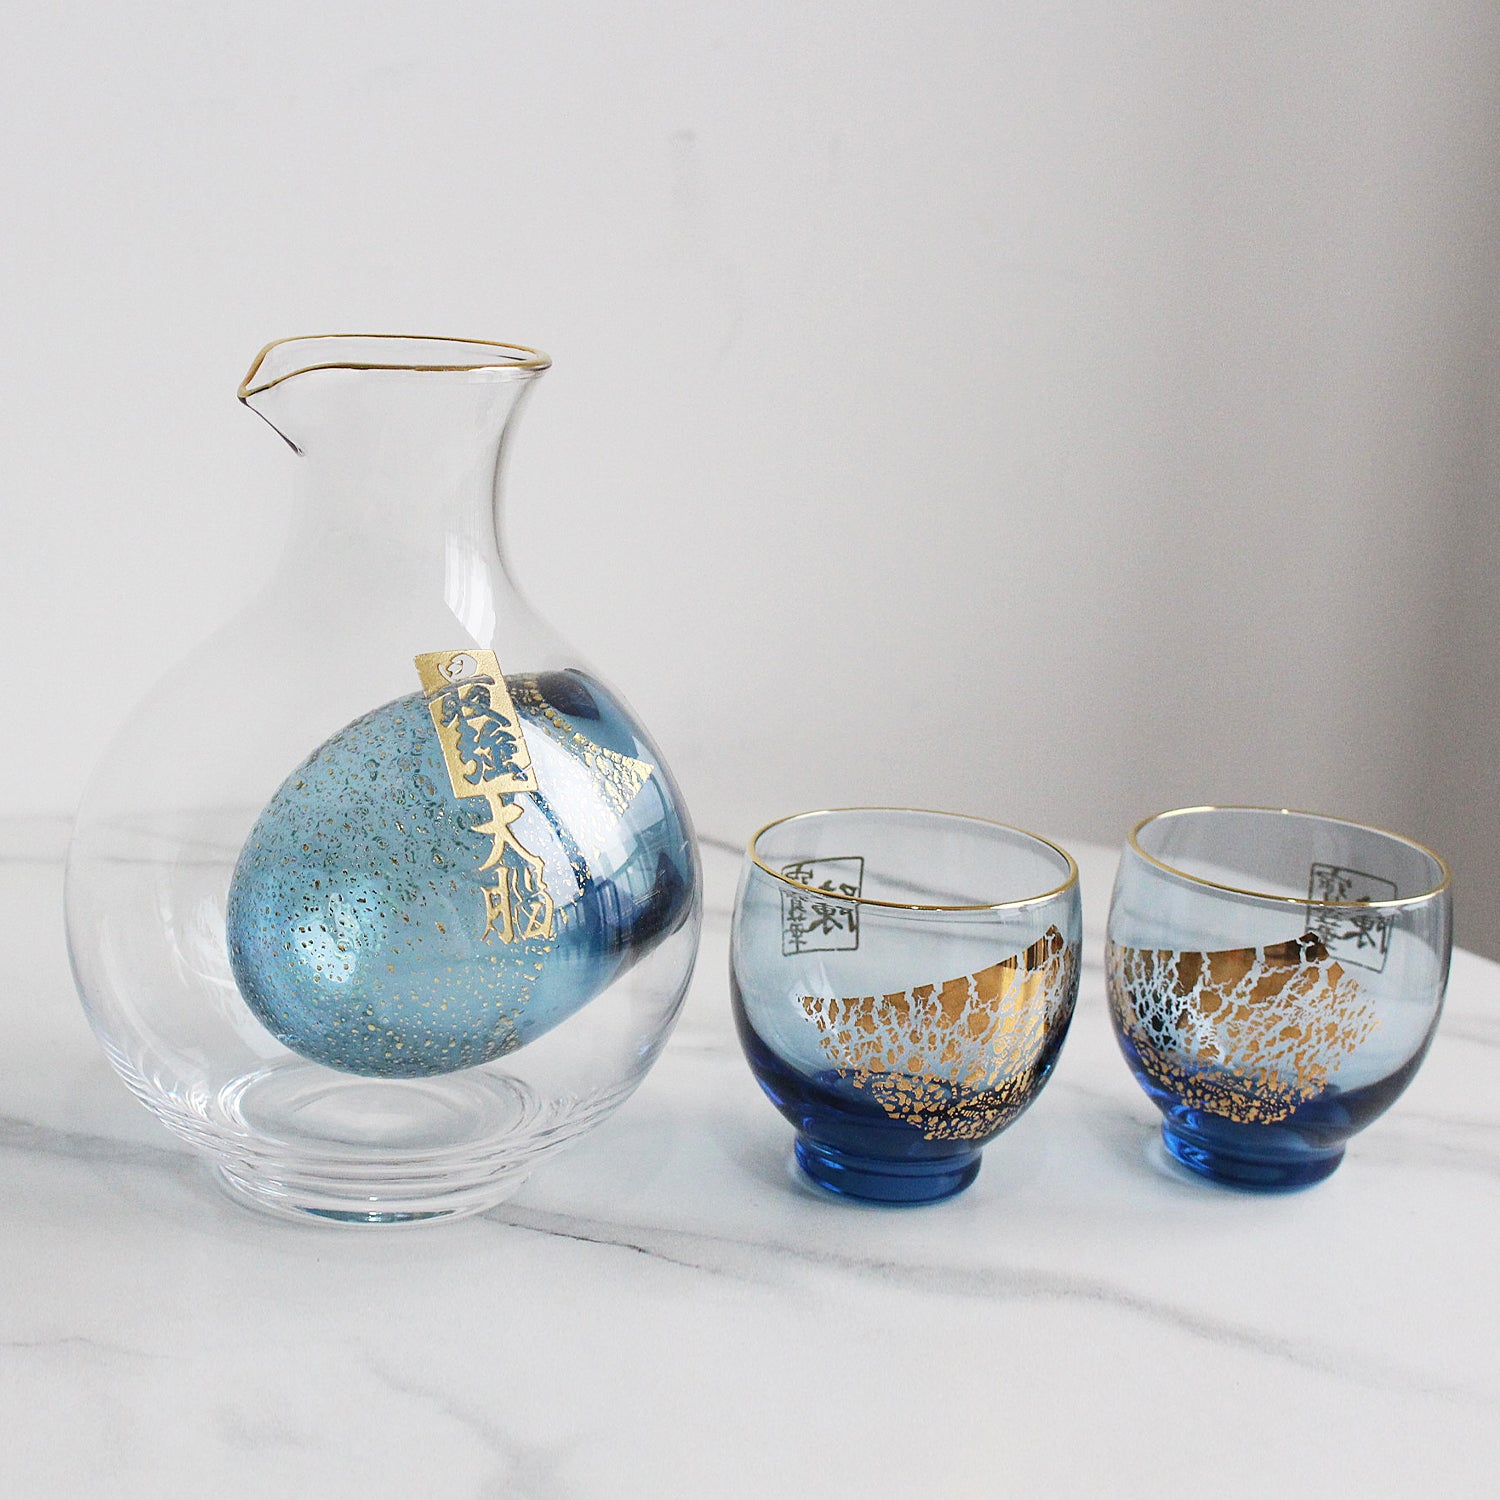 人手雕刻手工彩花一期一會清酒杯套裝 | Personalize Hand Made Sake Glasses Gift Set| - Design Your Own Wine